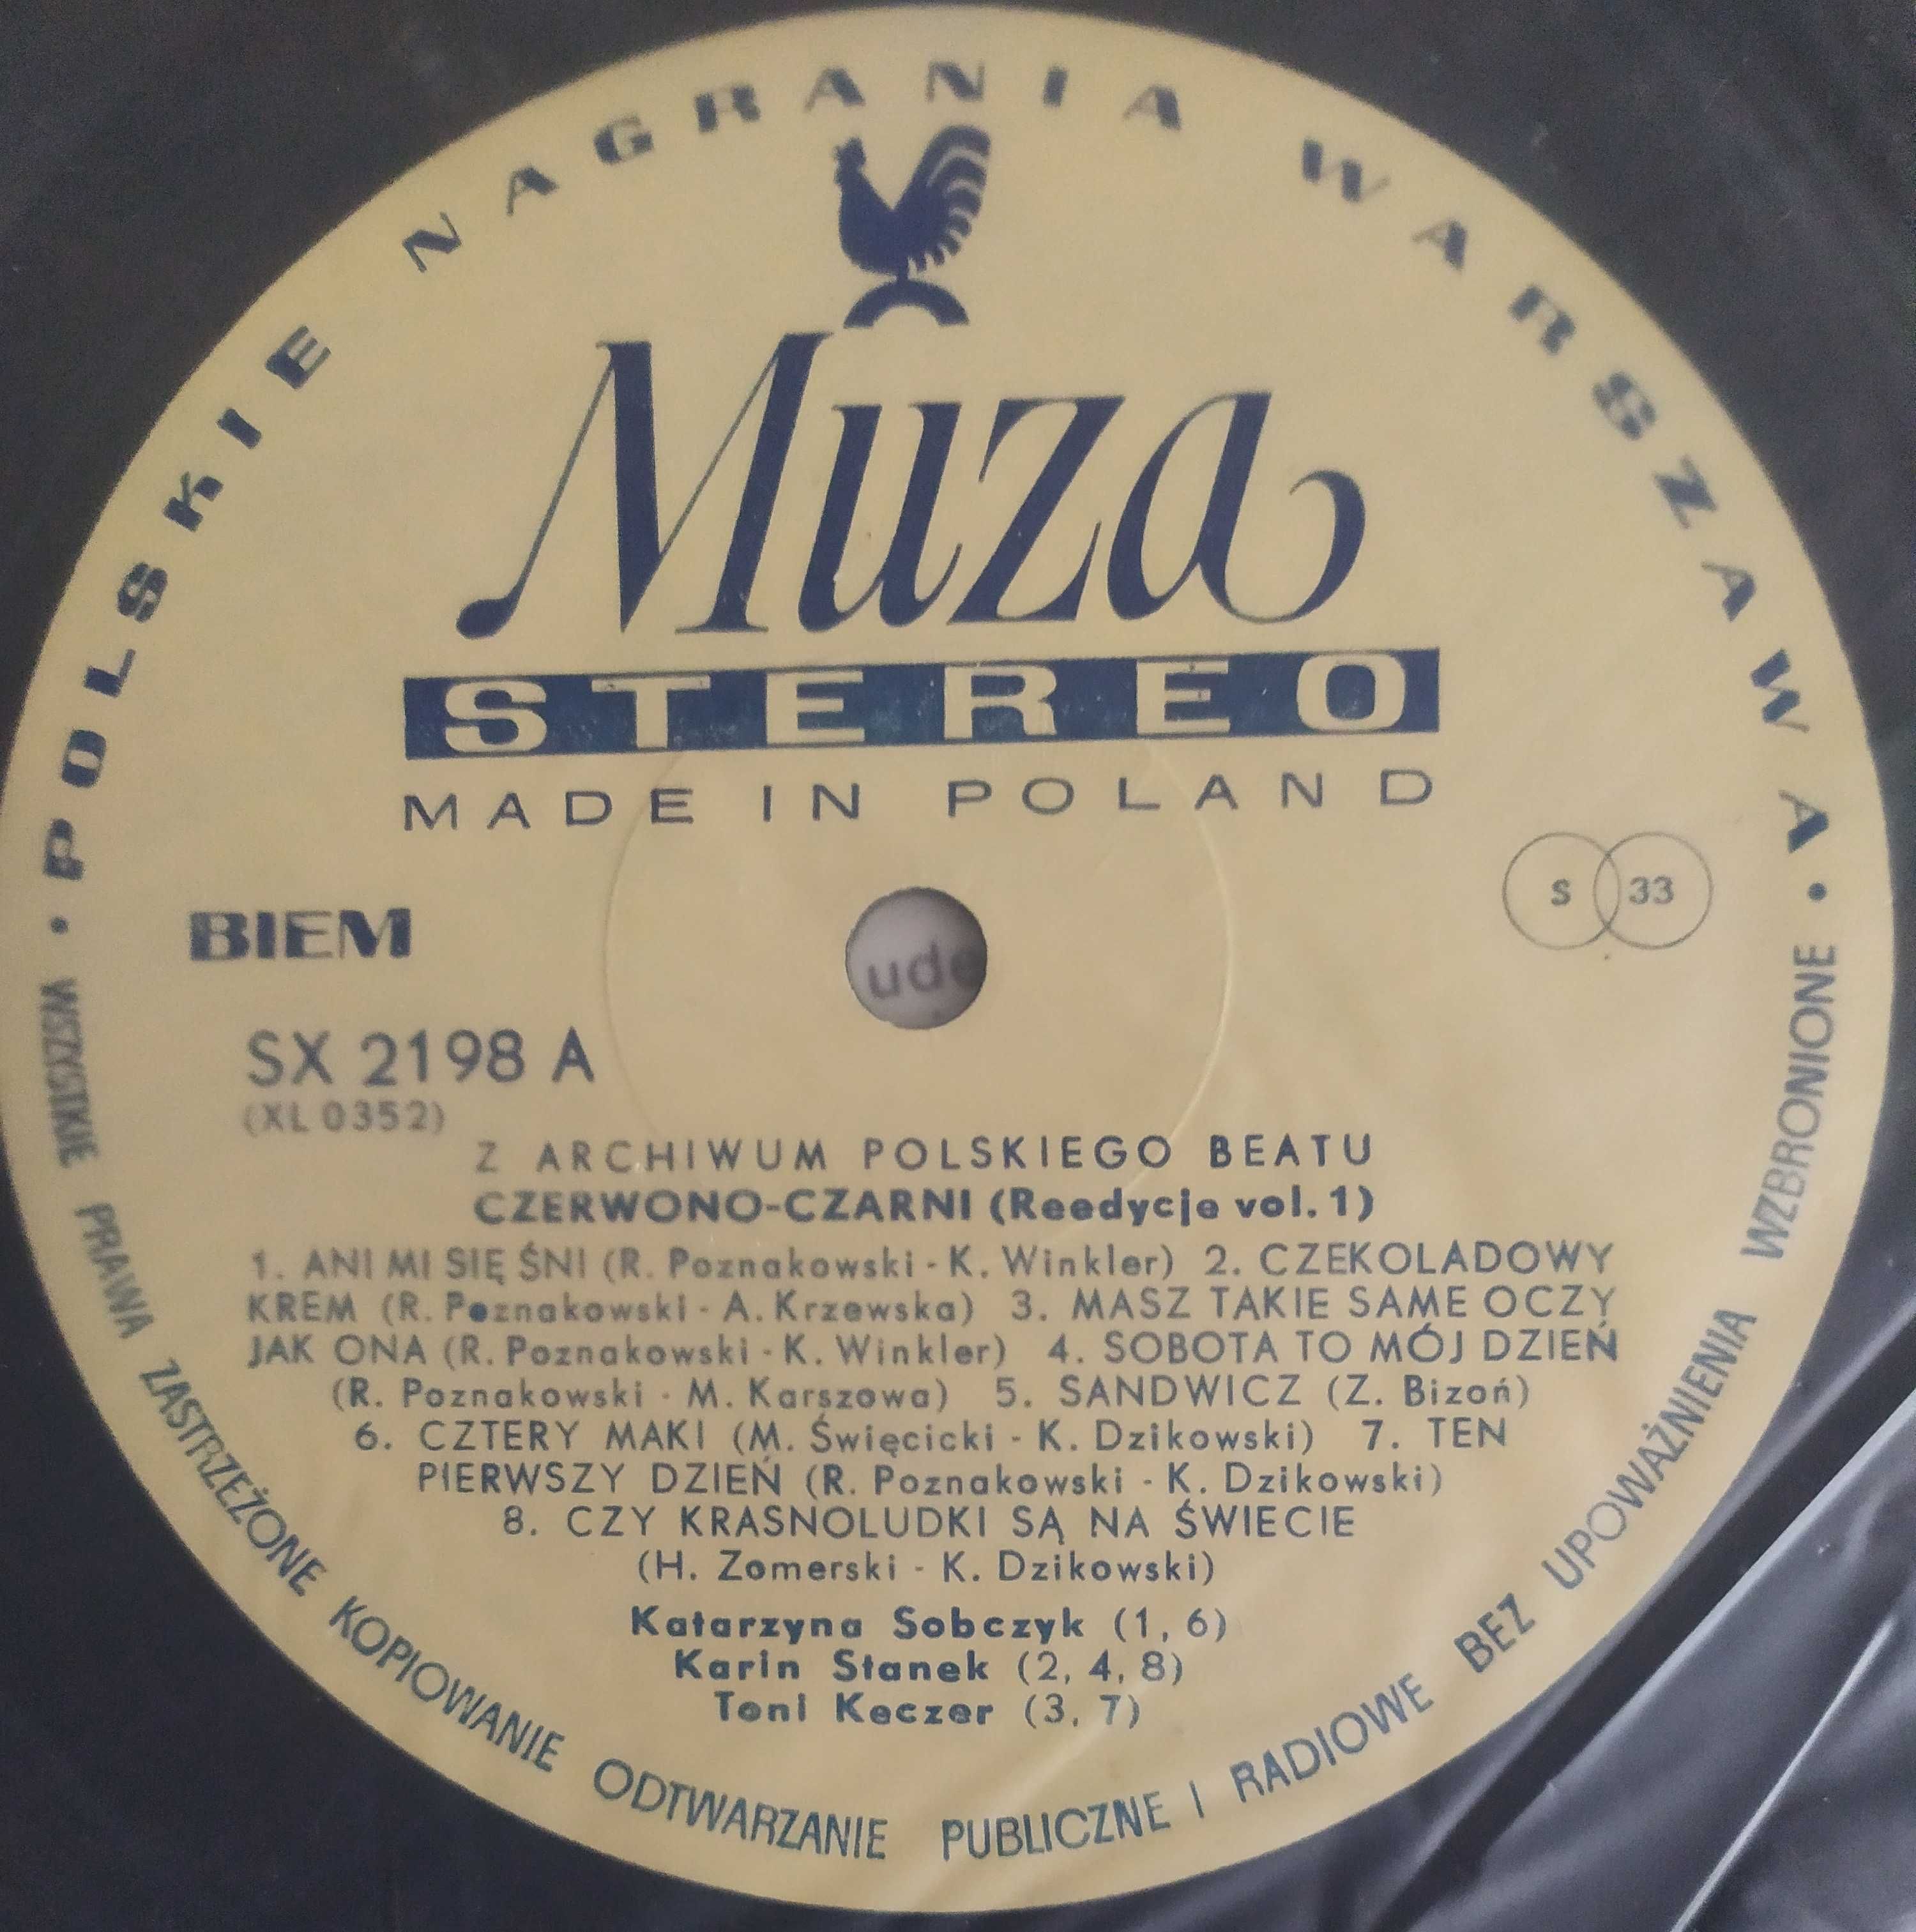 Czerwona-czarny. LP. EX.  Z archiwum Polskiego Beatu. Vol. 1